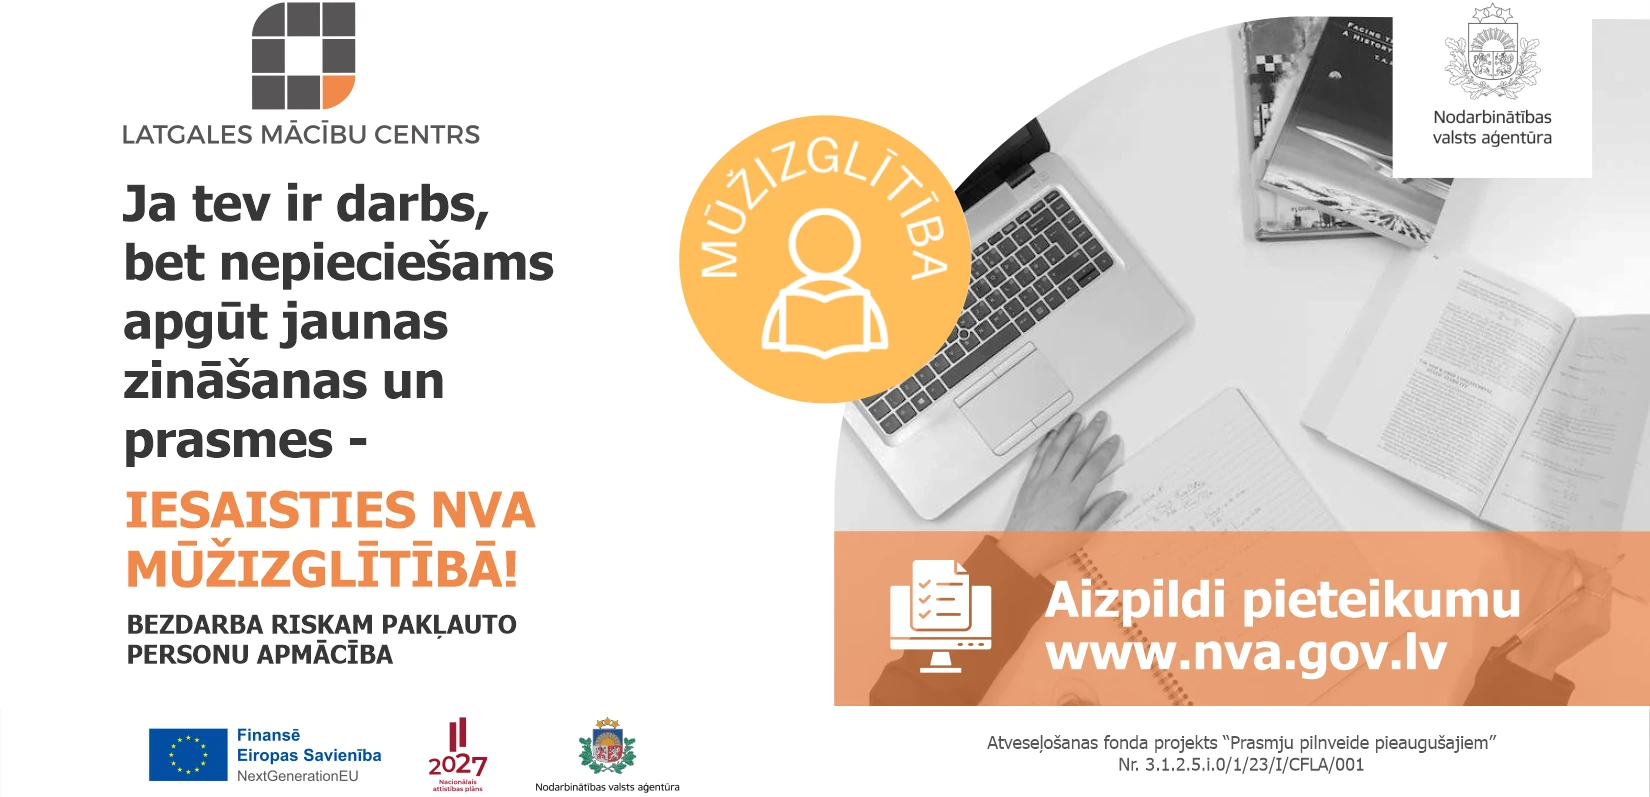 Mūžizglītība - Обучение по системе купона для работающих, зарегистрированных в NVA, находящихся в группе риска безработицы